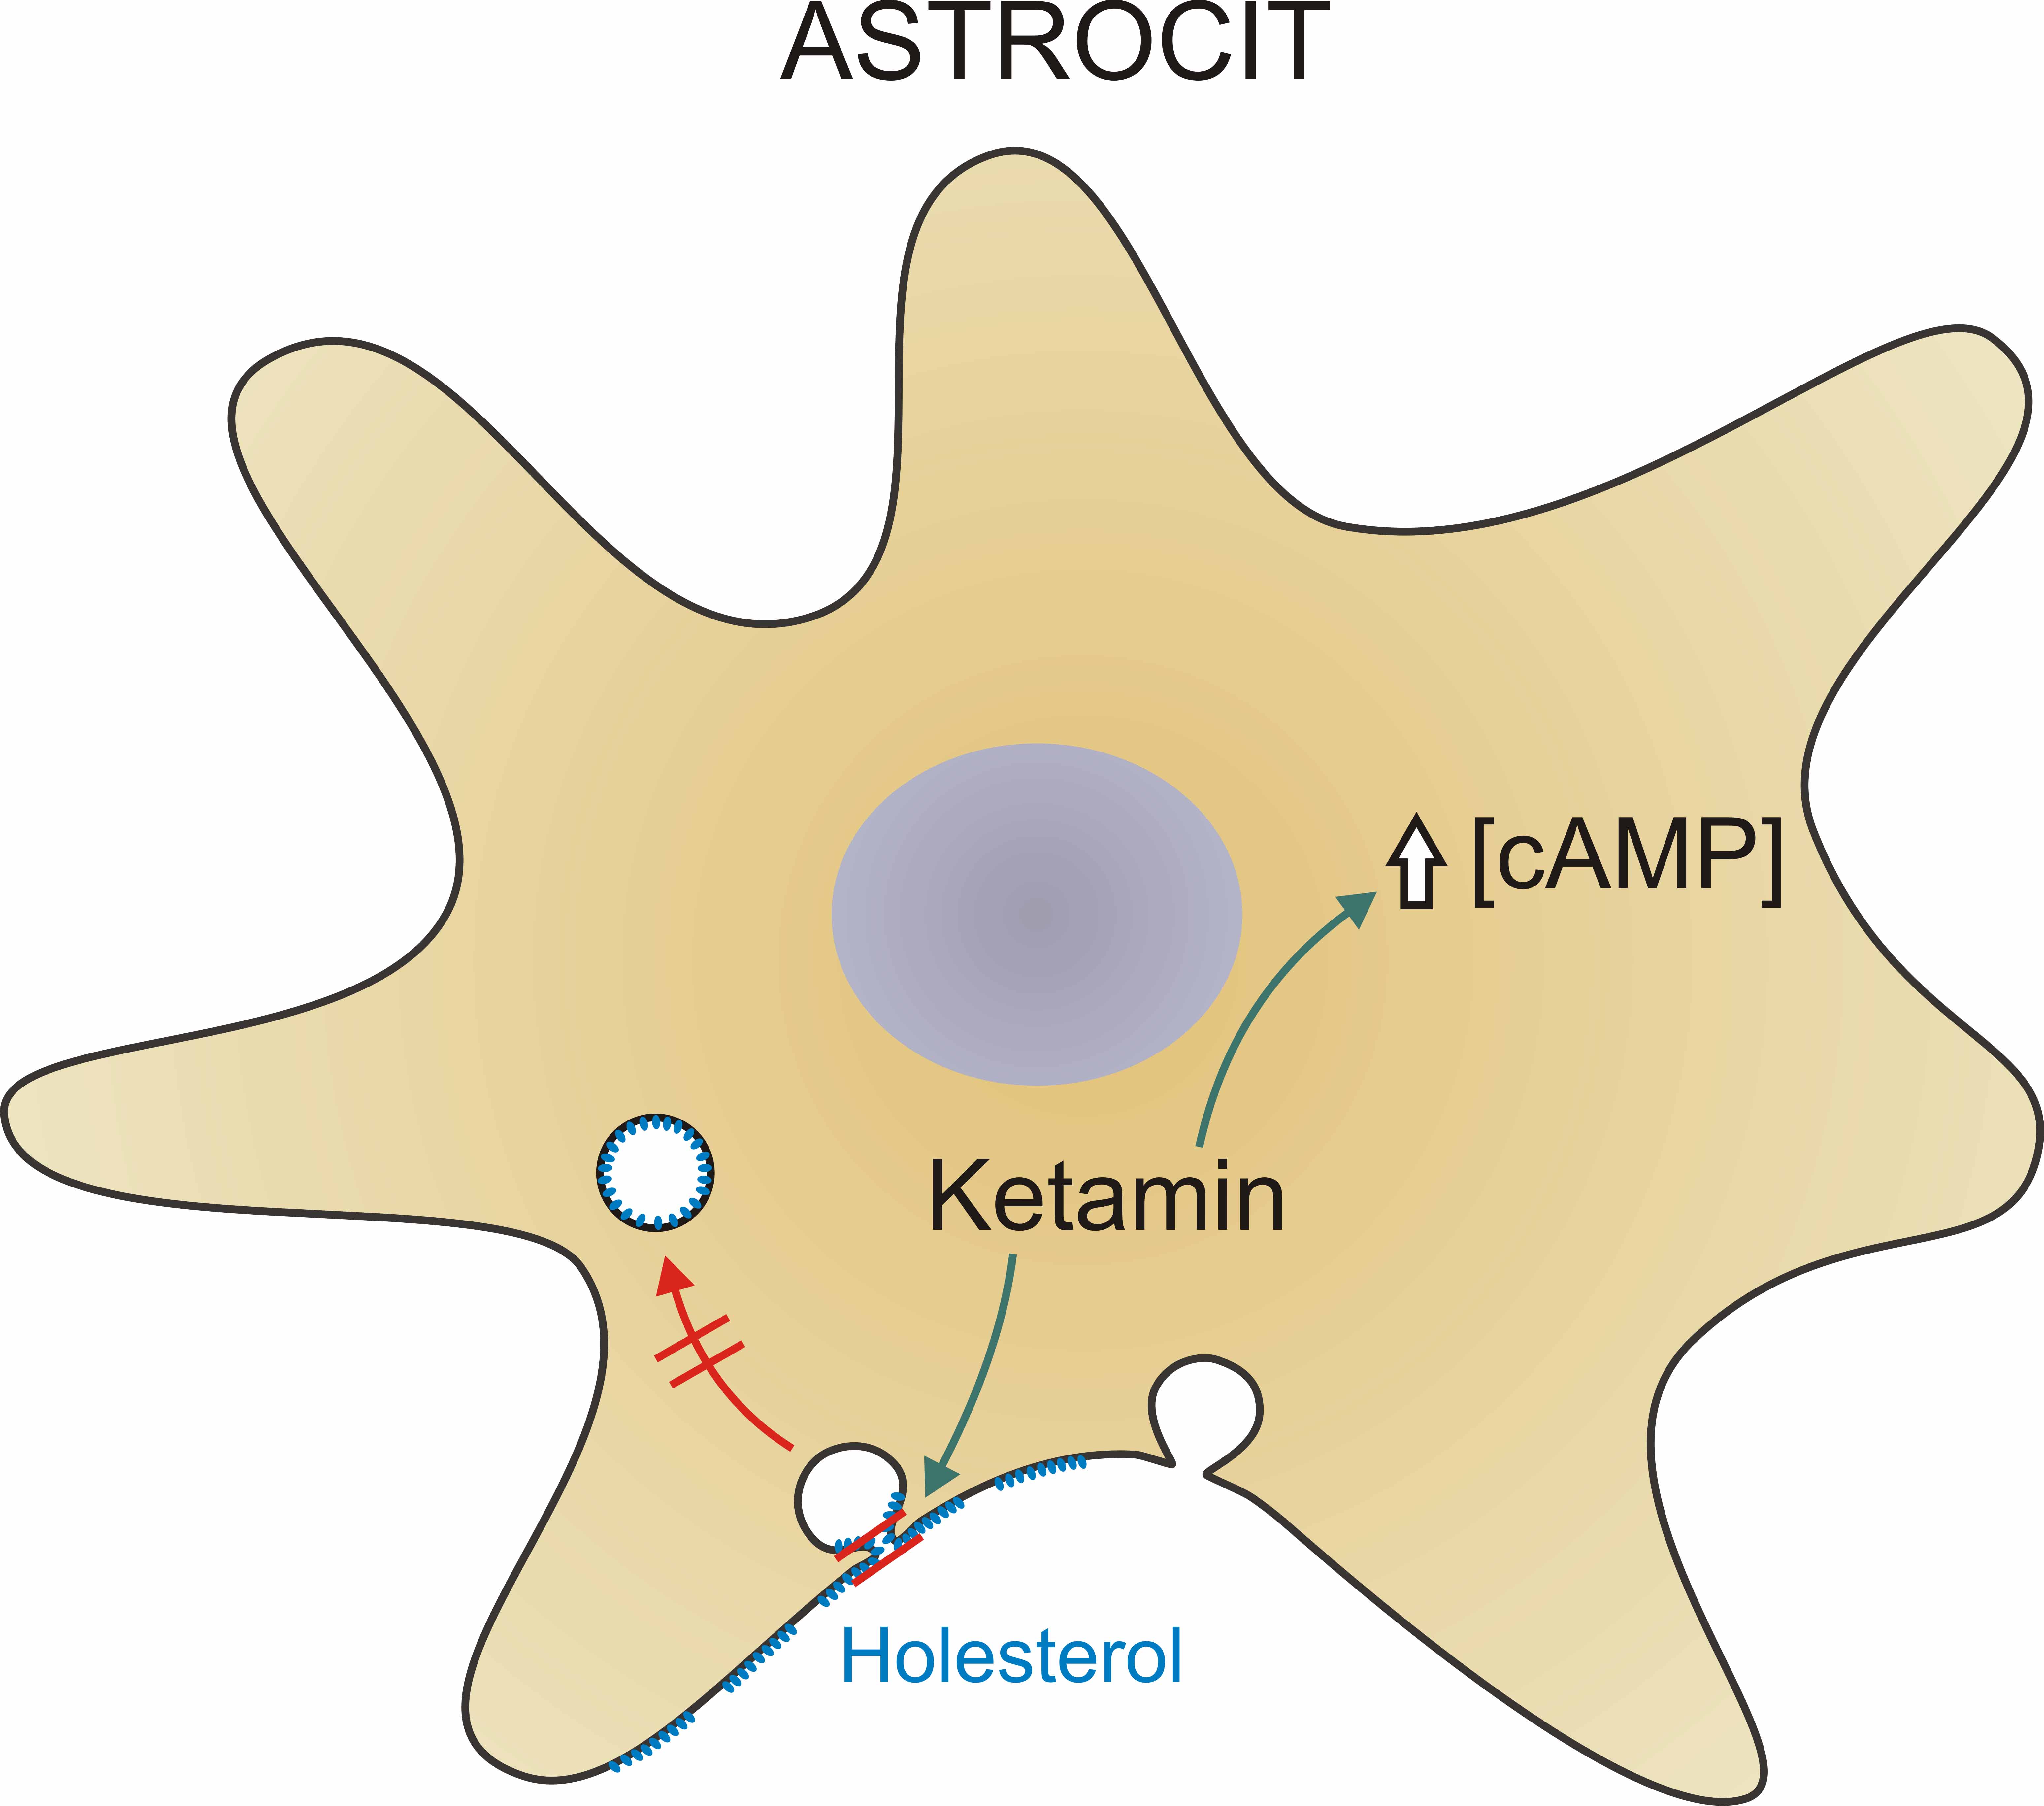  Slika 1. Ketamin izzove povečanje (zelena puščica) znotrajcelične koncentracije sekundarnega prenašalca cAMP ([cAMP]) v astrocitih in stabilizira ozko fuzijsko poro zlitih mešičkov, ki preprečuje (rdeča puščica in dvojna črta) endocitotsko odcepitev od plazmaleme in njihov prehod v citosol. Ketamin hkrati izzove povečanje števila s holesterolom obogatenih območij (zelena puščica) na površini astrocitov, ki omogočijo povečan pretok holesterola k nevronom, kjer igra ključno vlogo pri oblikovanju in ohranjanju sinaps.